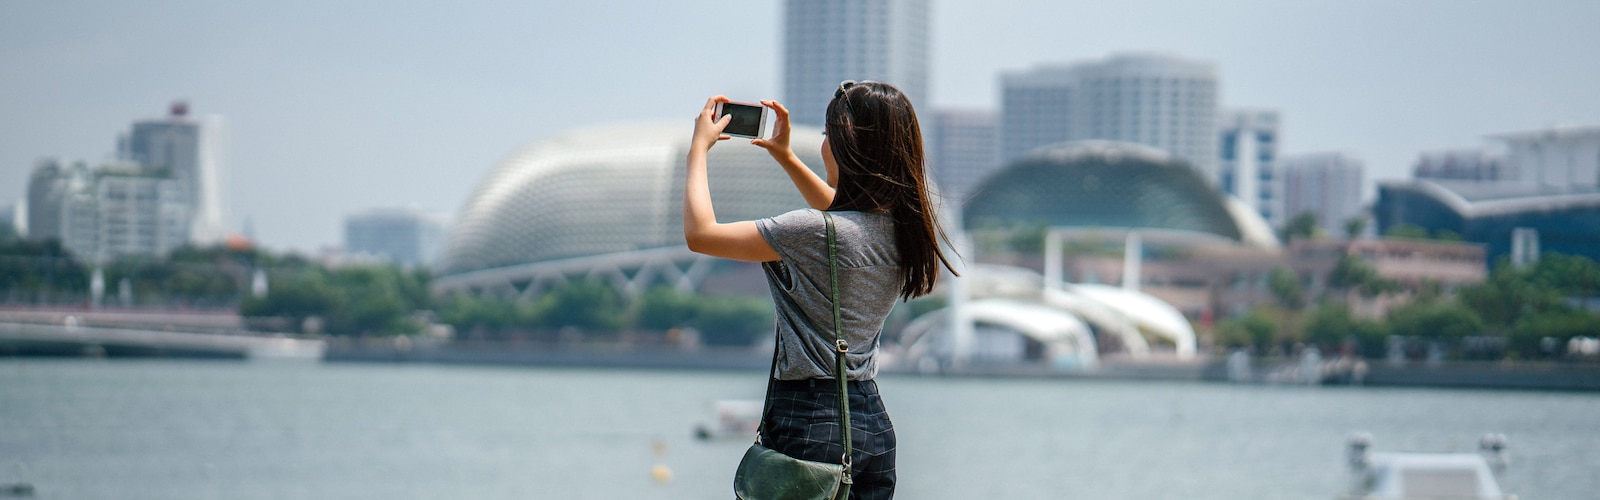 Femme prenant une photo d’une vue sur la ville avec son iPhone